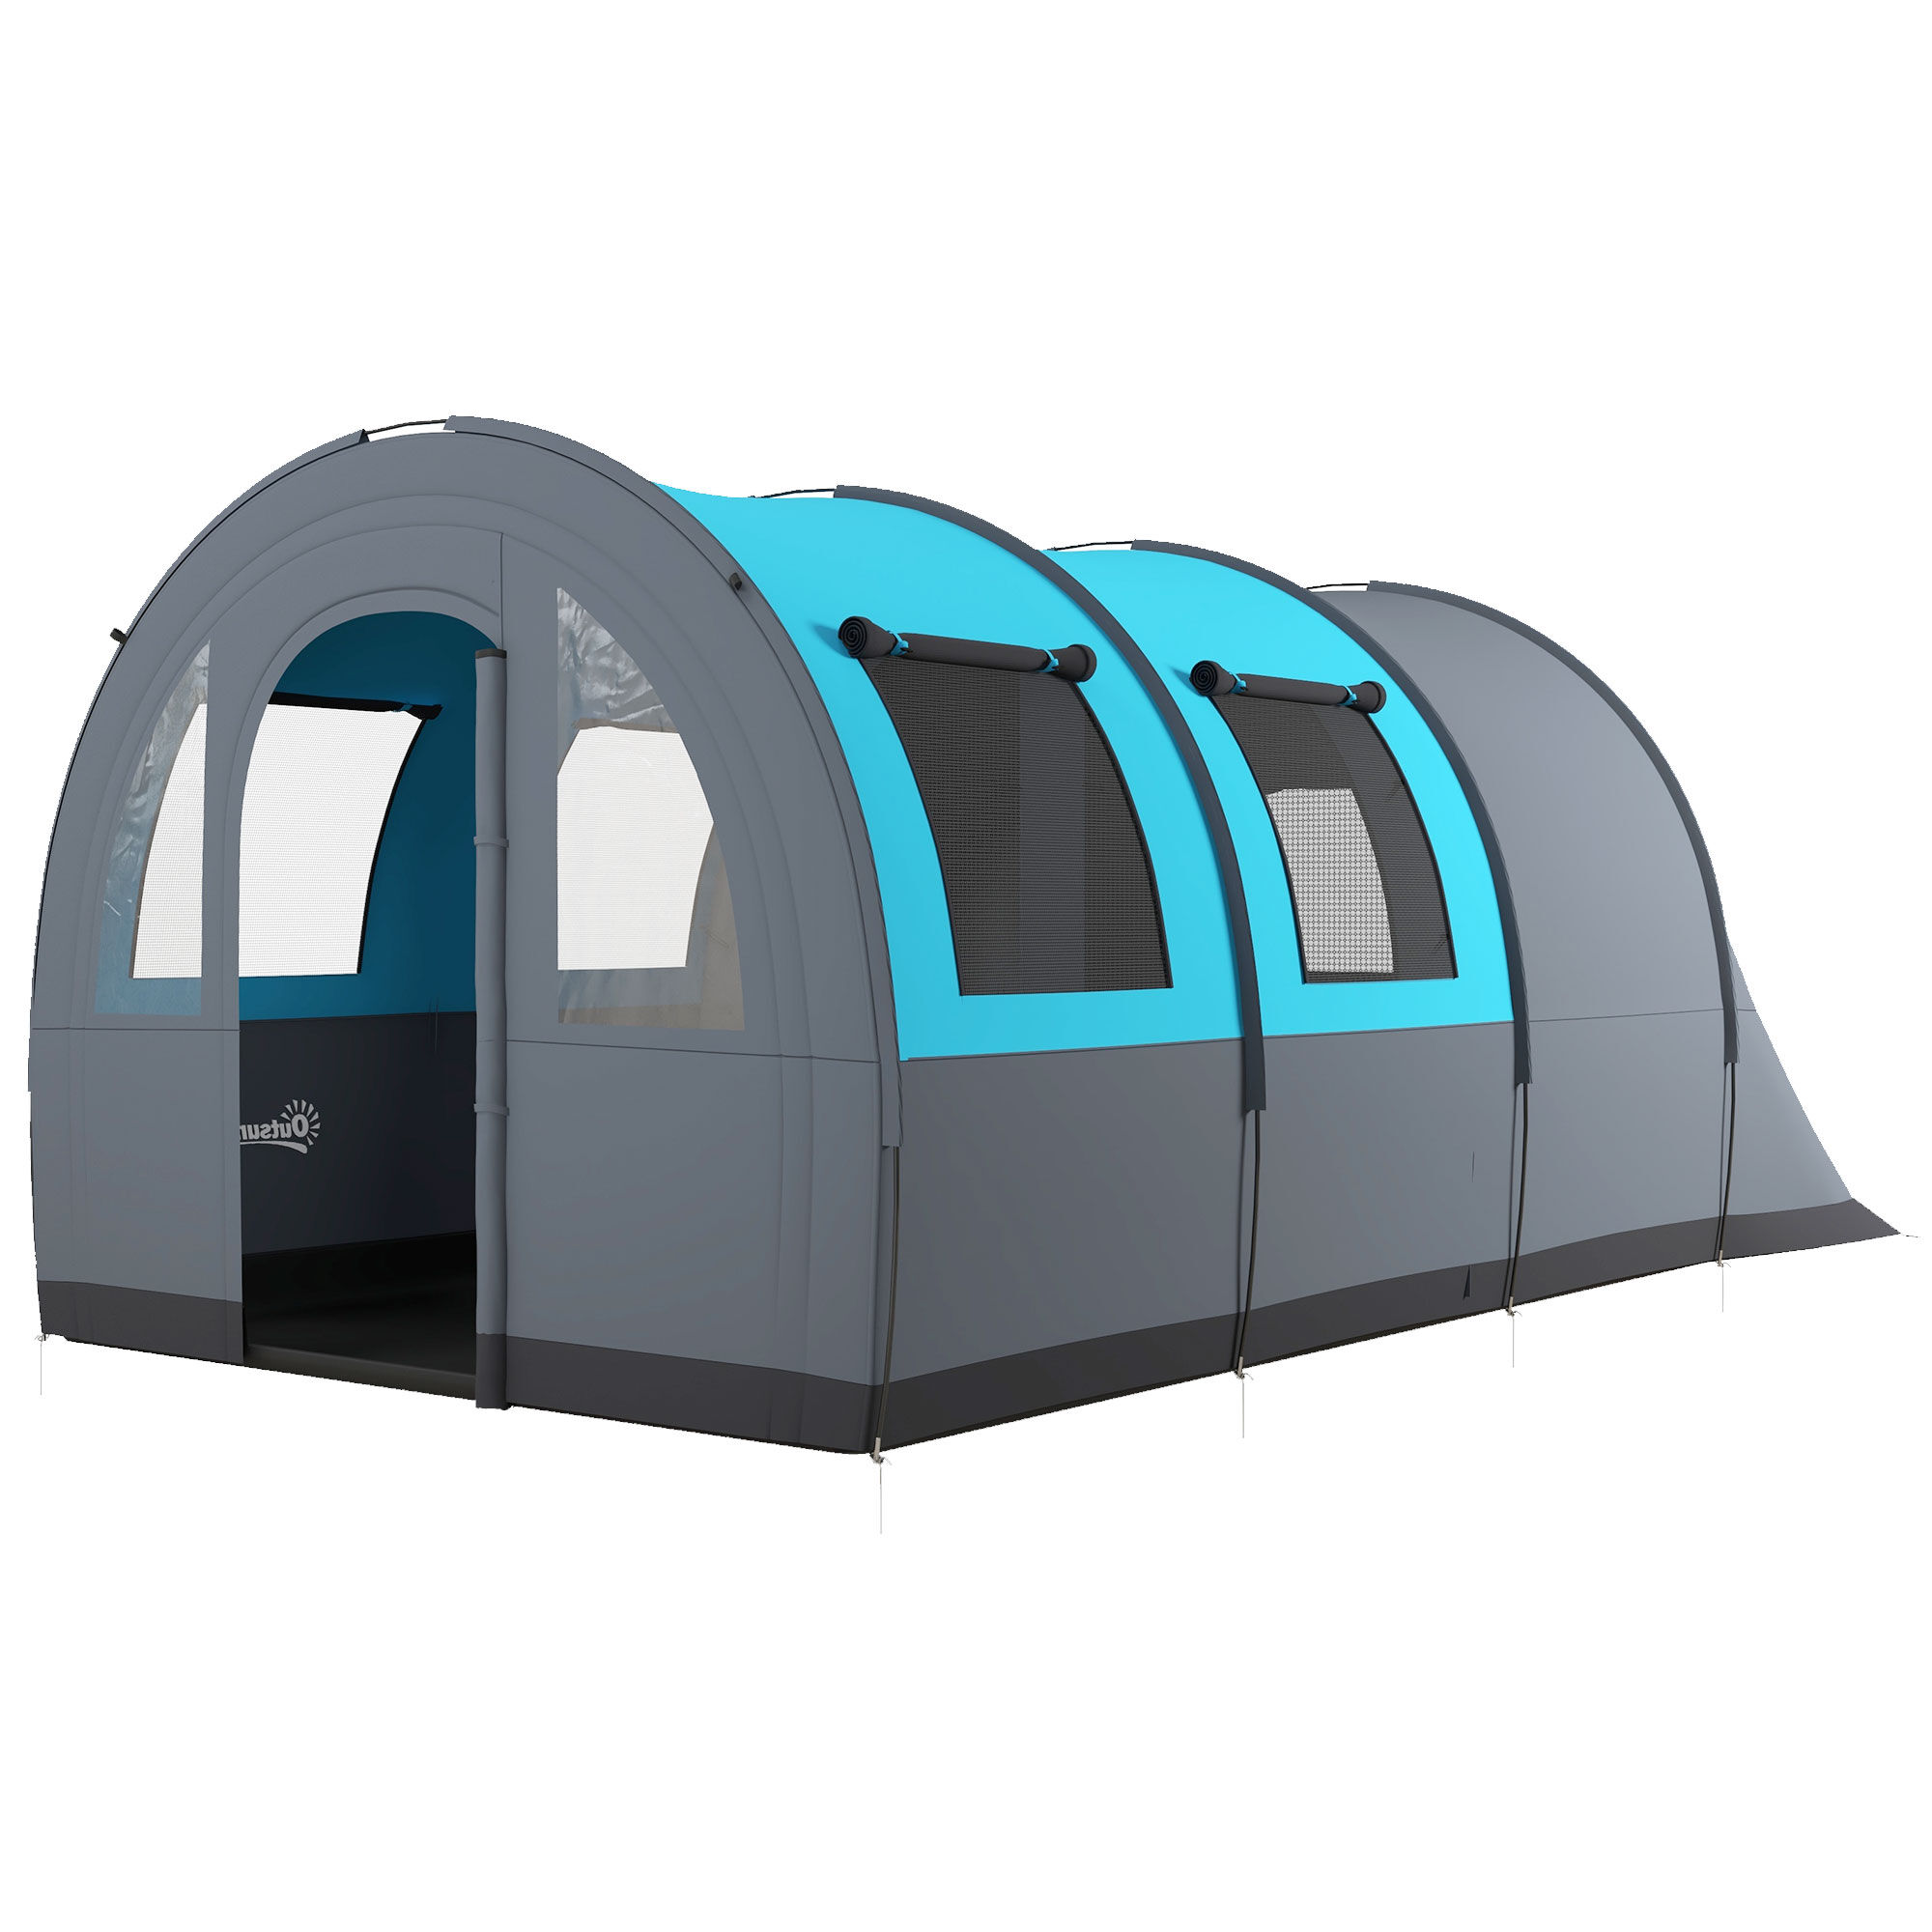 Outsunny Tenda da Campeggio 5 Posti Impermeabile con Zona Notte e Giorno, in Poliestere, 480x260x200 cm, Grigio e Blu